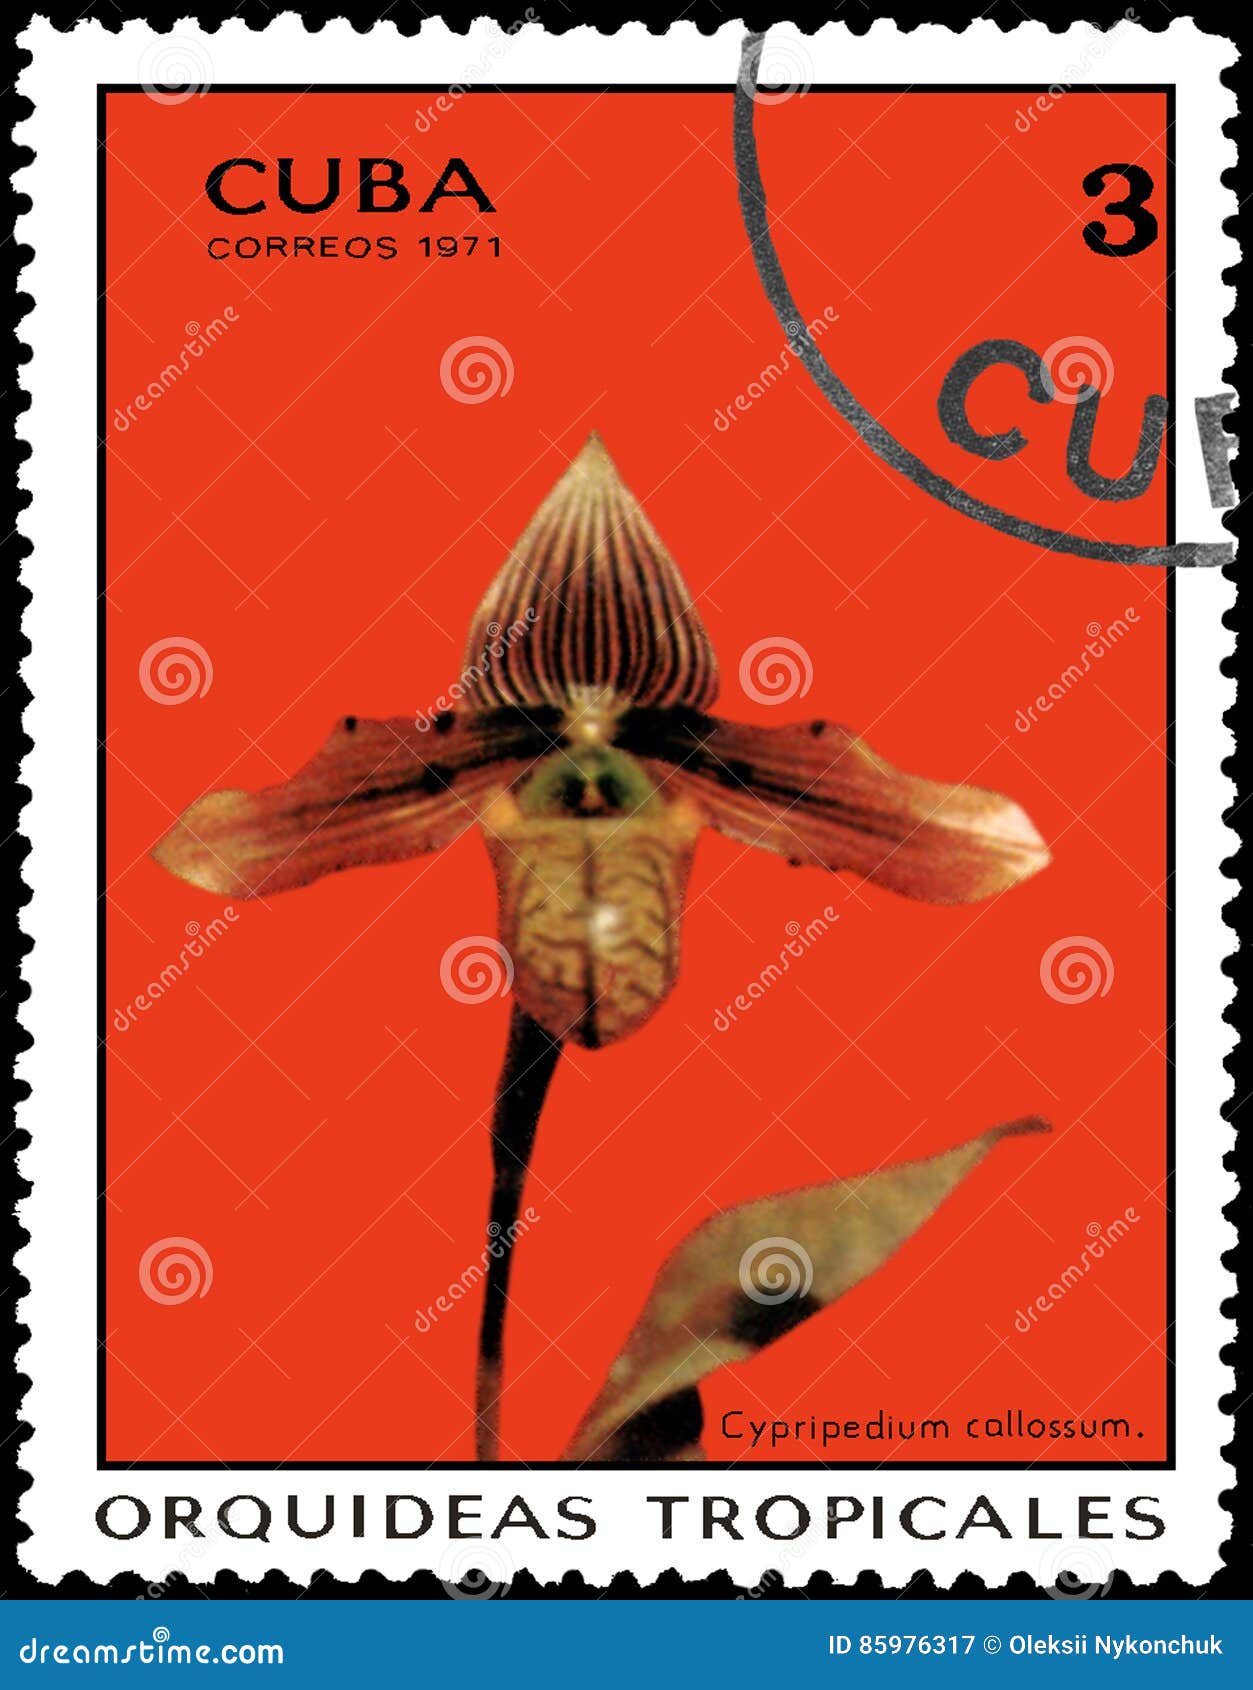 Cuba Circa 1976 Stamp Printed Cuba Stock Photo 176207762